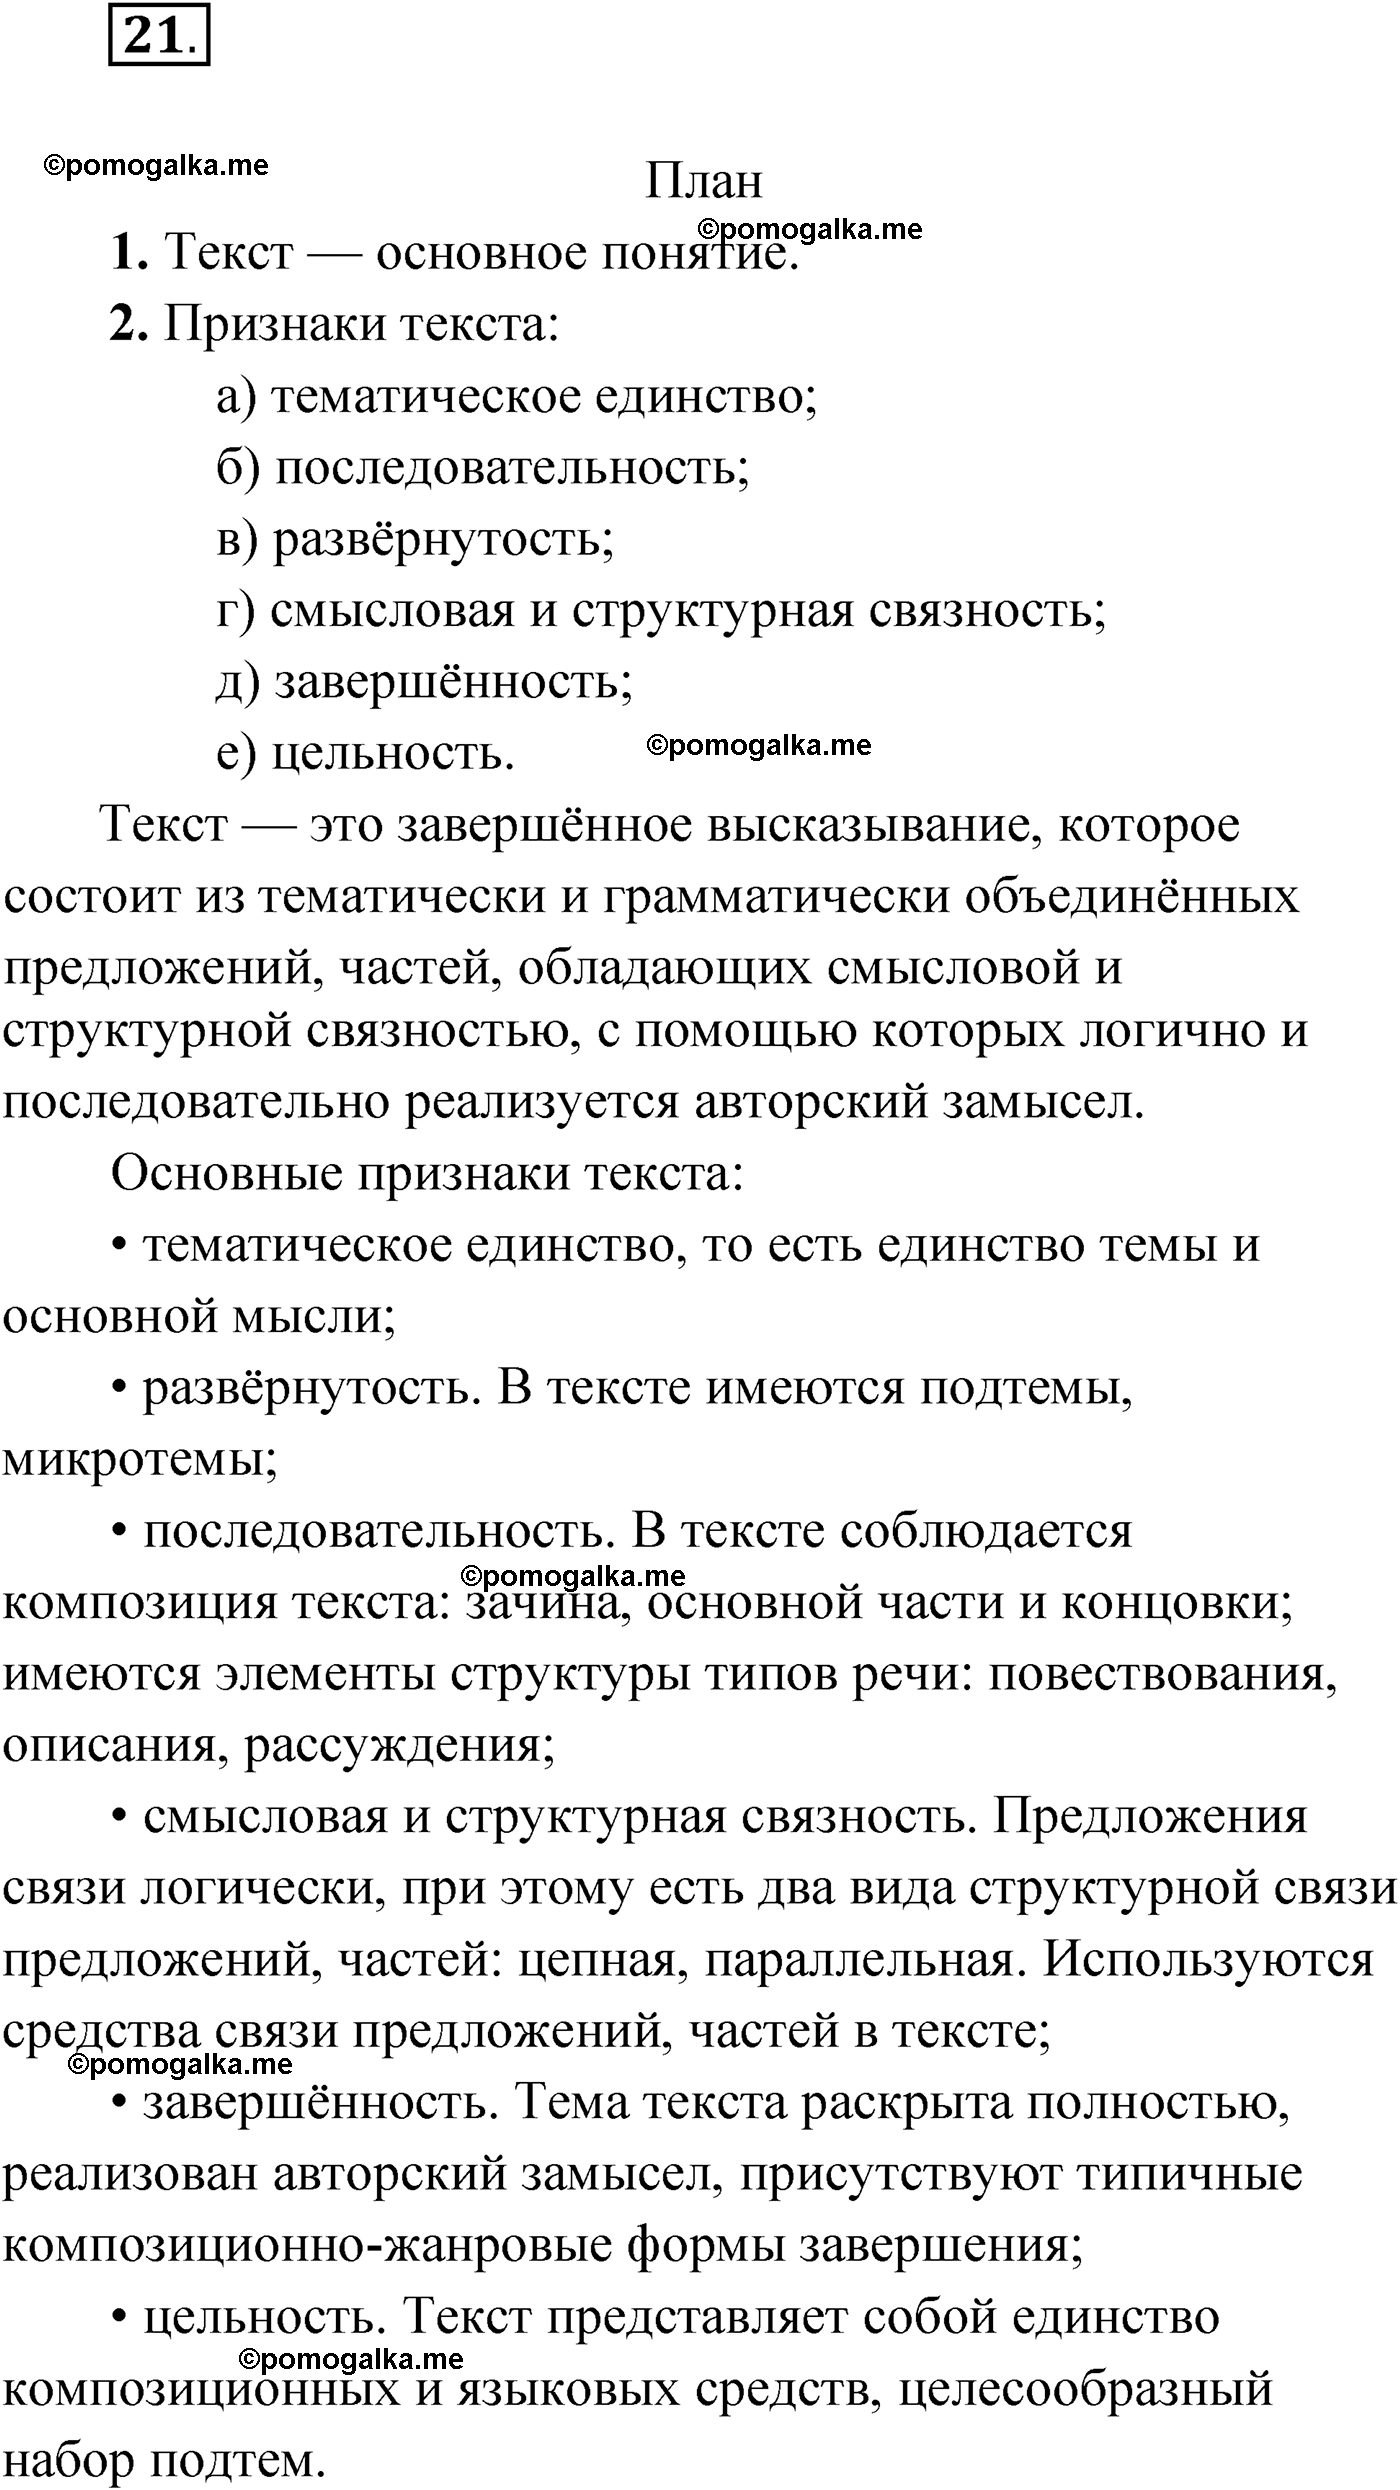 упражнение №21 русский язык 9 класс Мурина 2019 год